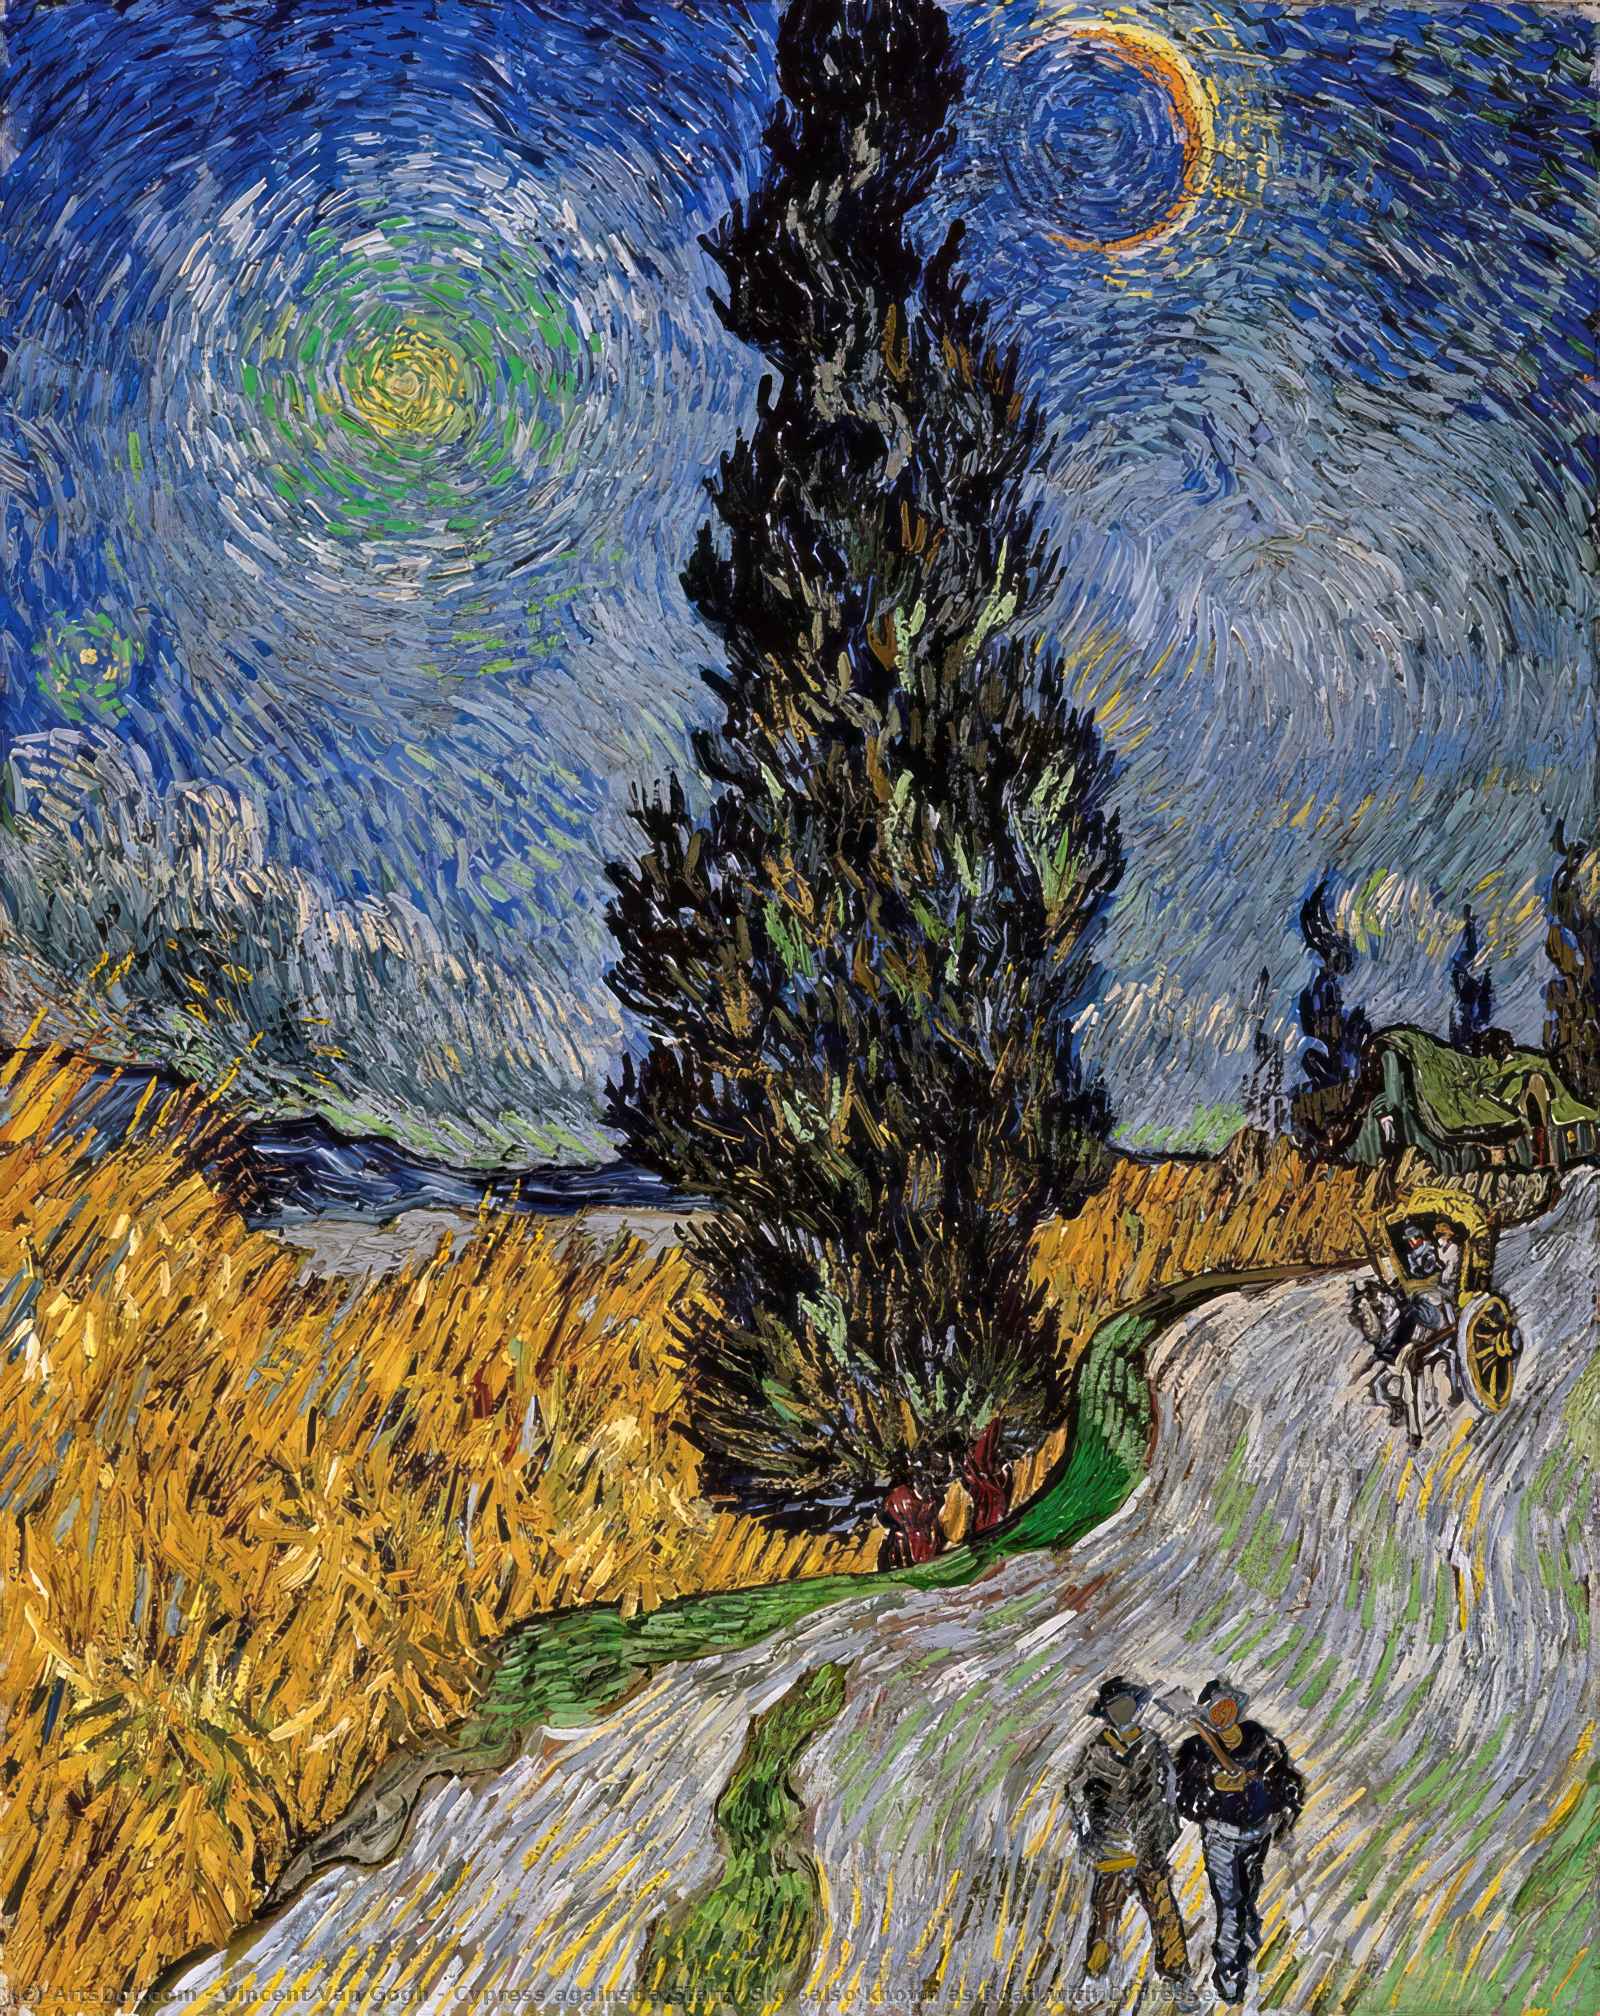 Compre Museu De Reproduções De Arte Cipreste contra um céu estrelado (também conhecido como estrada com ciprestes), 1890 por Vincent Van Gogh (1853-1890, Netherlands) | ArtsDot.com